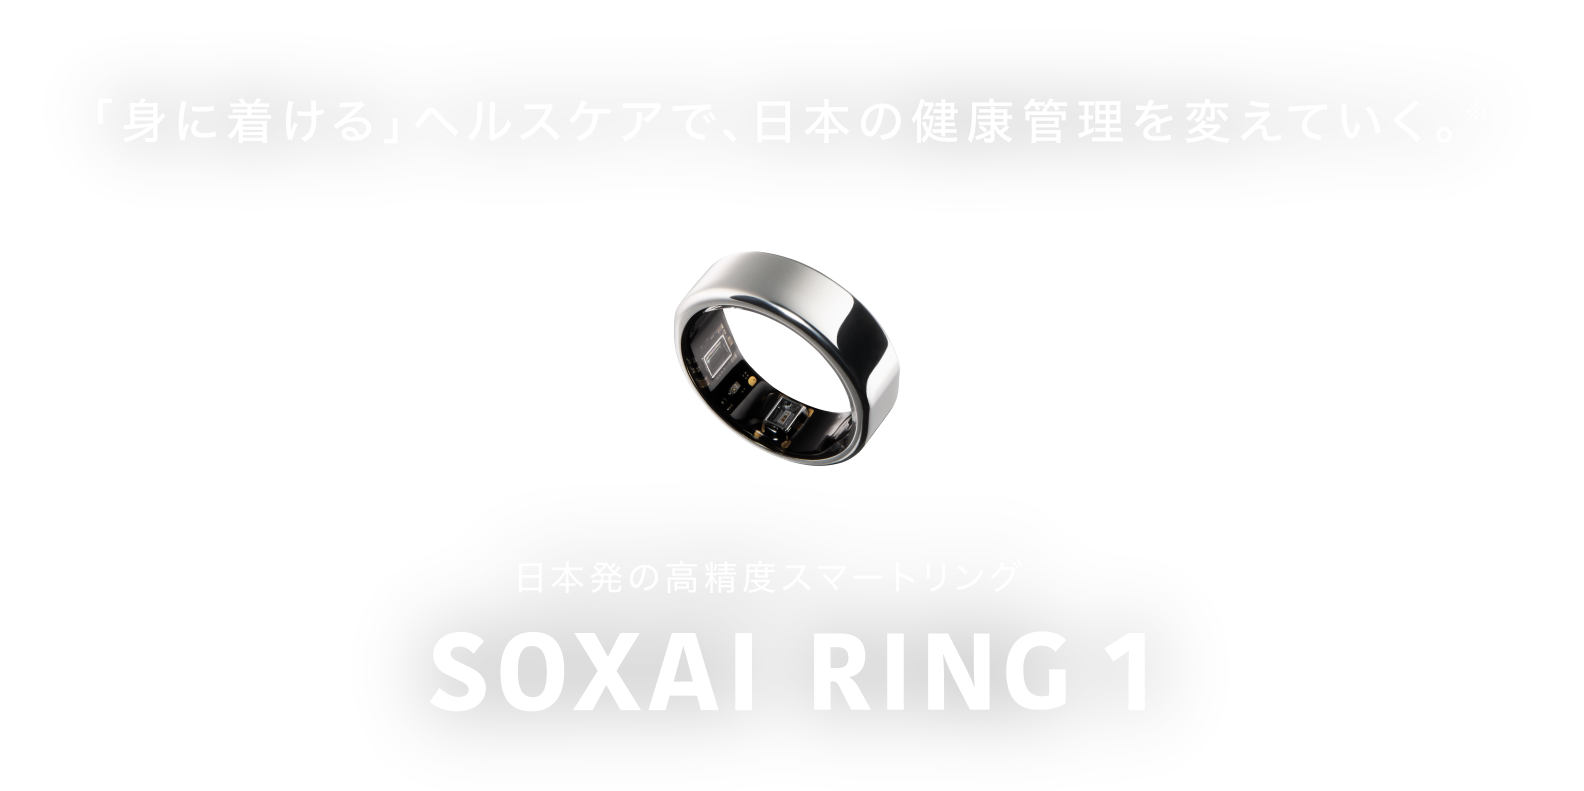 「身に着ける」ヘルスケアで、日本の健康管理を変えていく。日本発の高精度スマートリングSOXAI RING 1